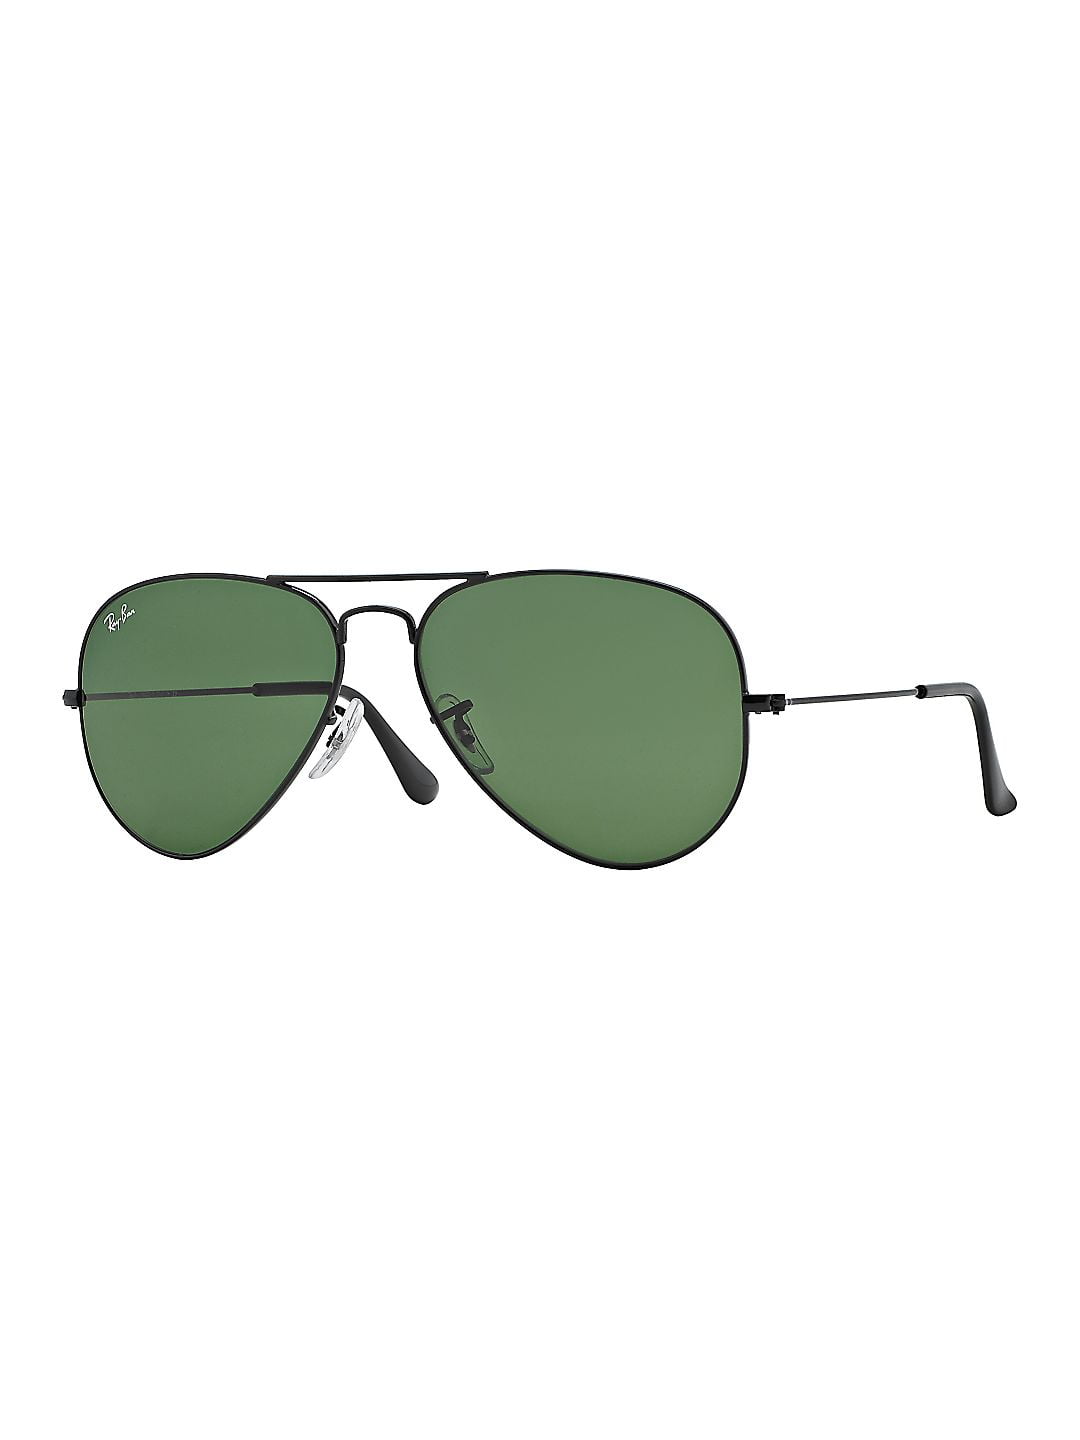 Aviator Sunglasses - Walmart.com